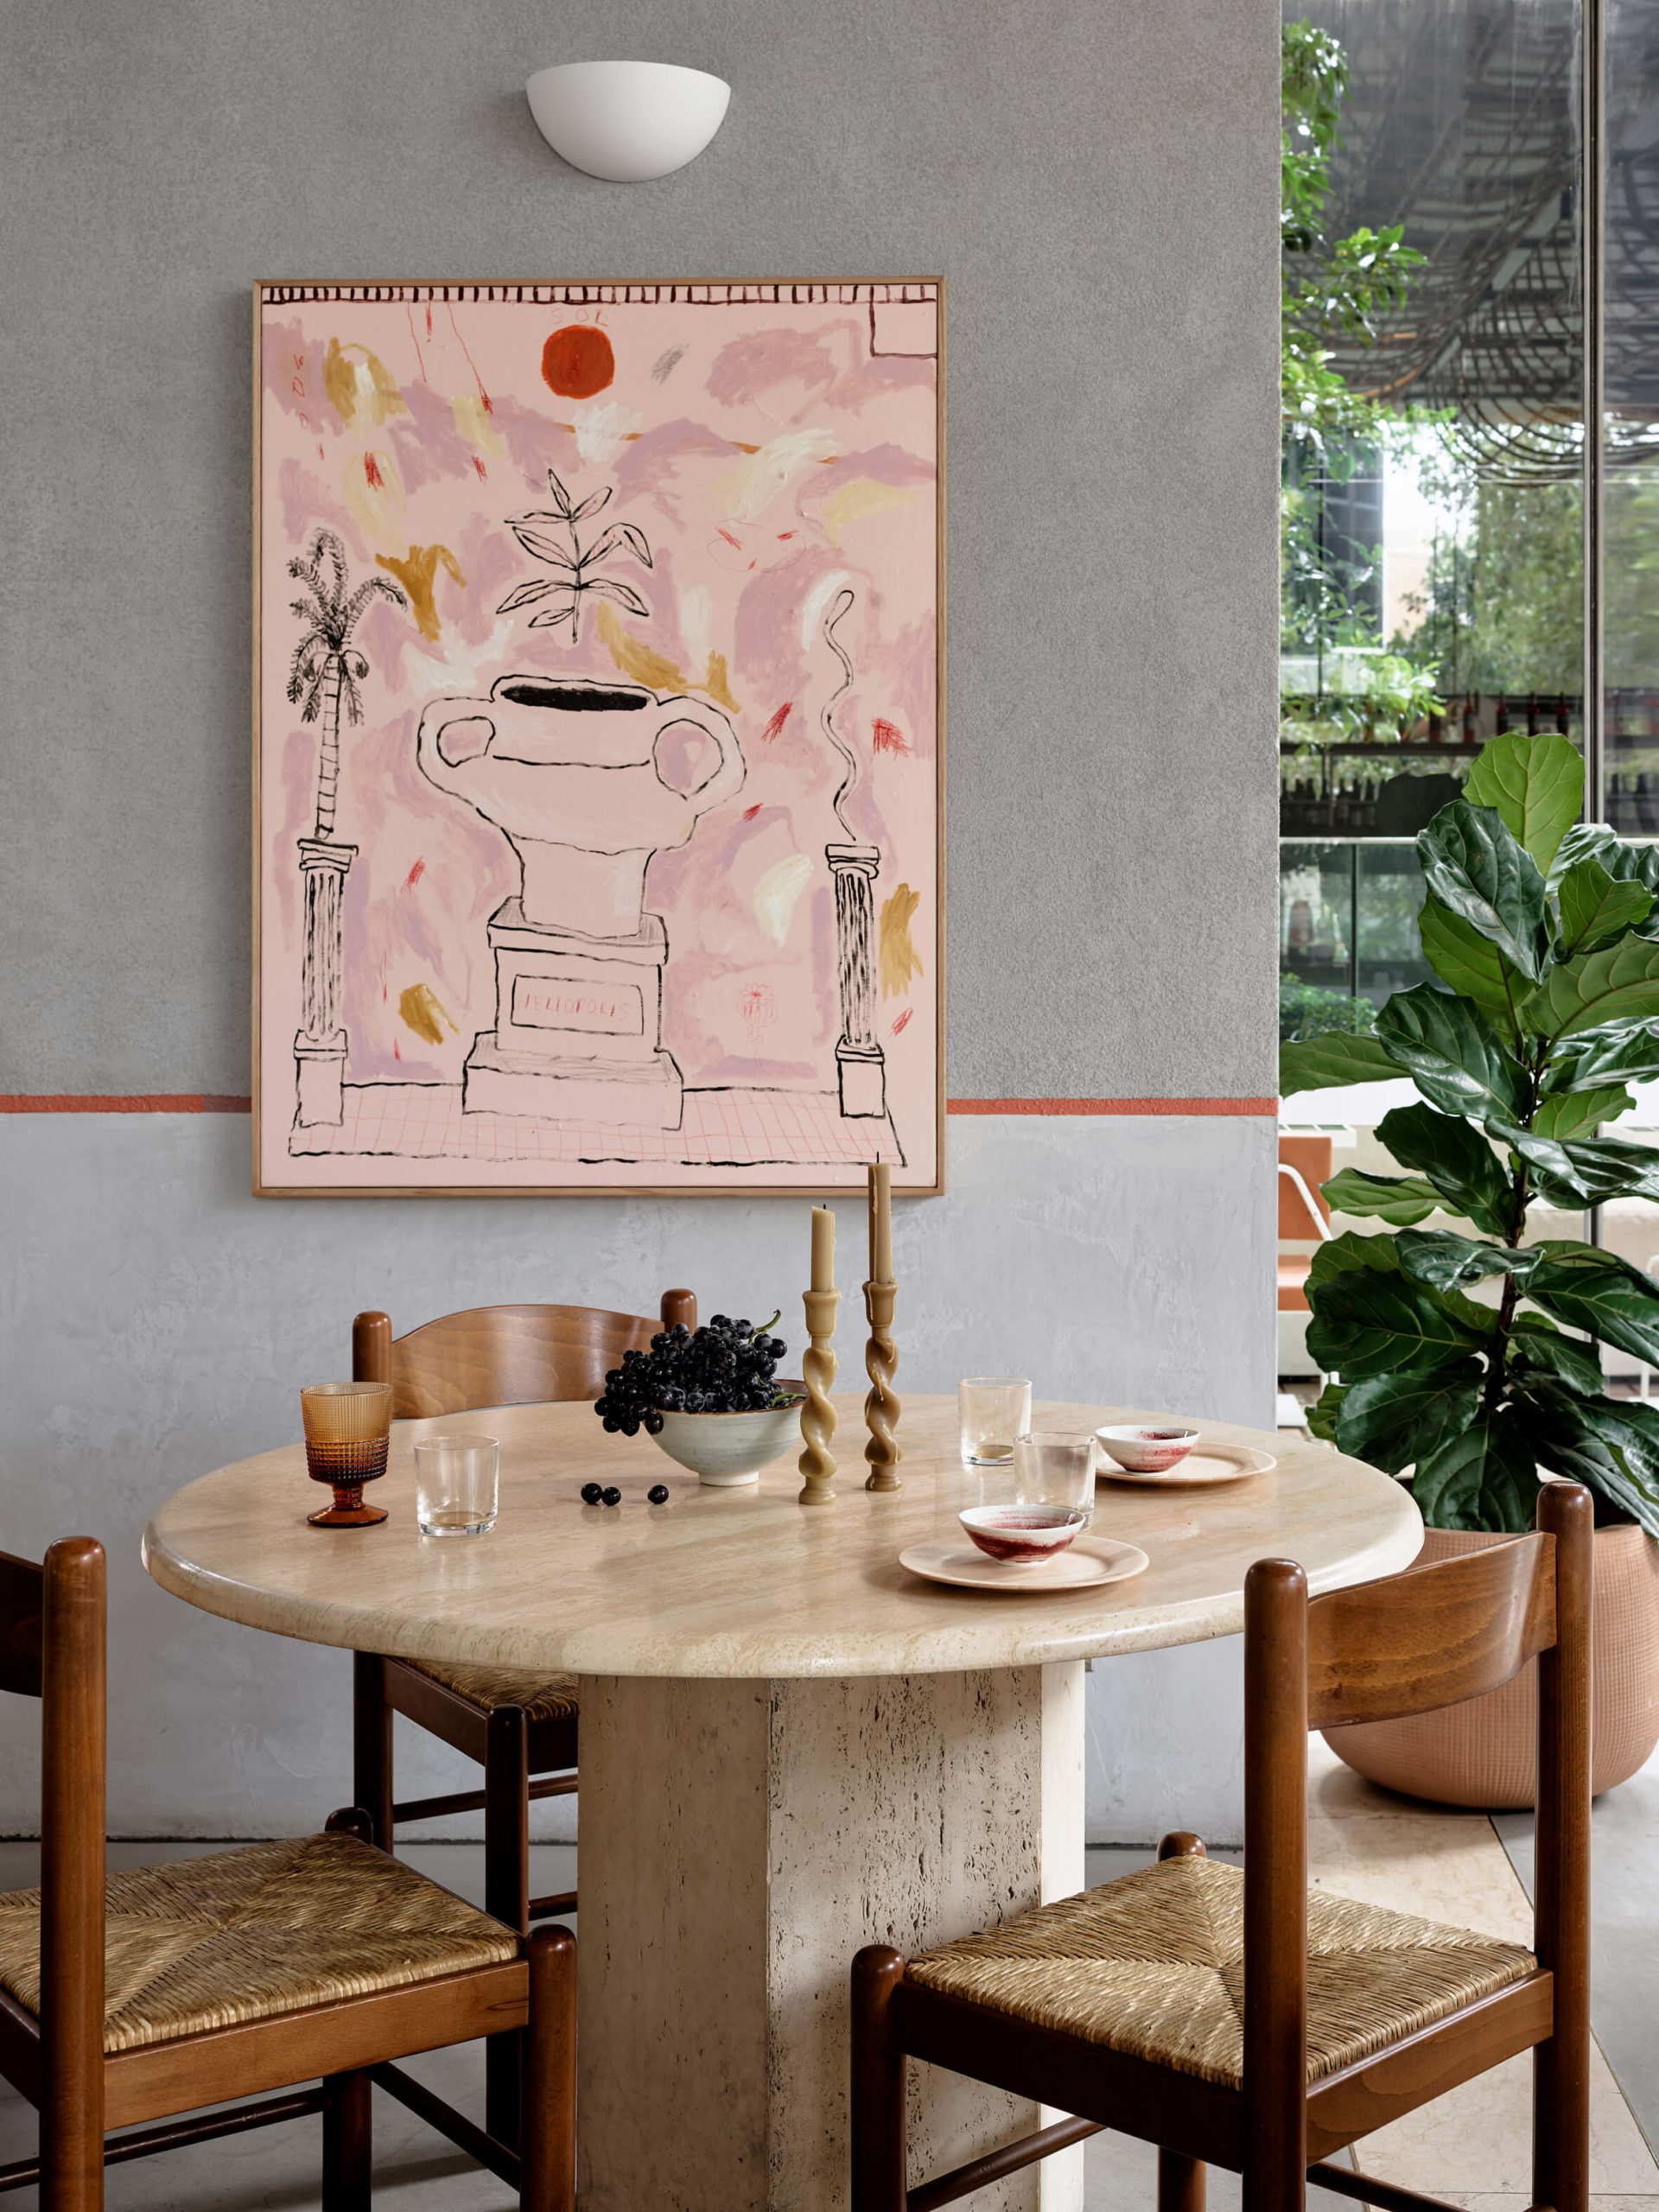 wystrój-restauracji-inspiracje-wnętrze-drewno-rattan-biel-nowoczesne-stół-krzesła